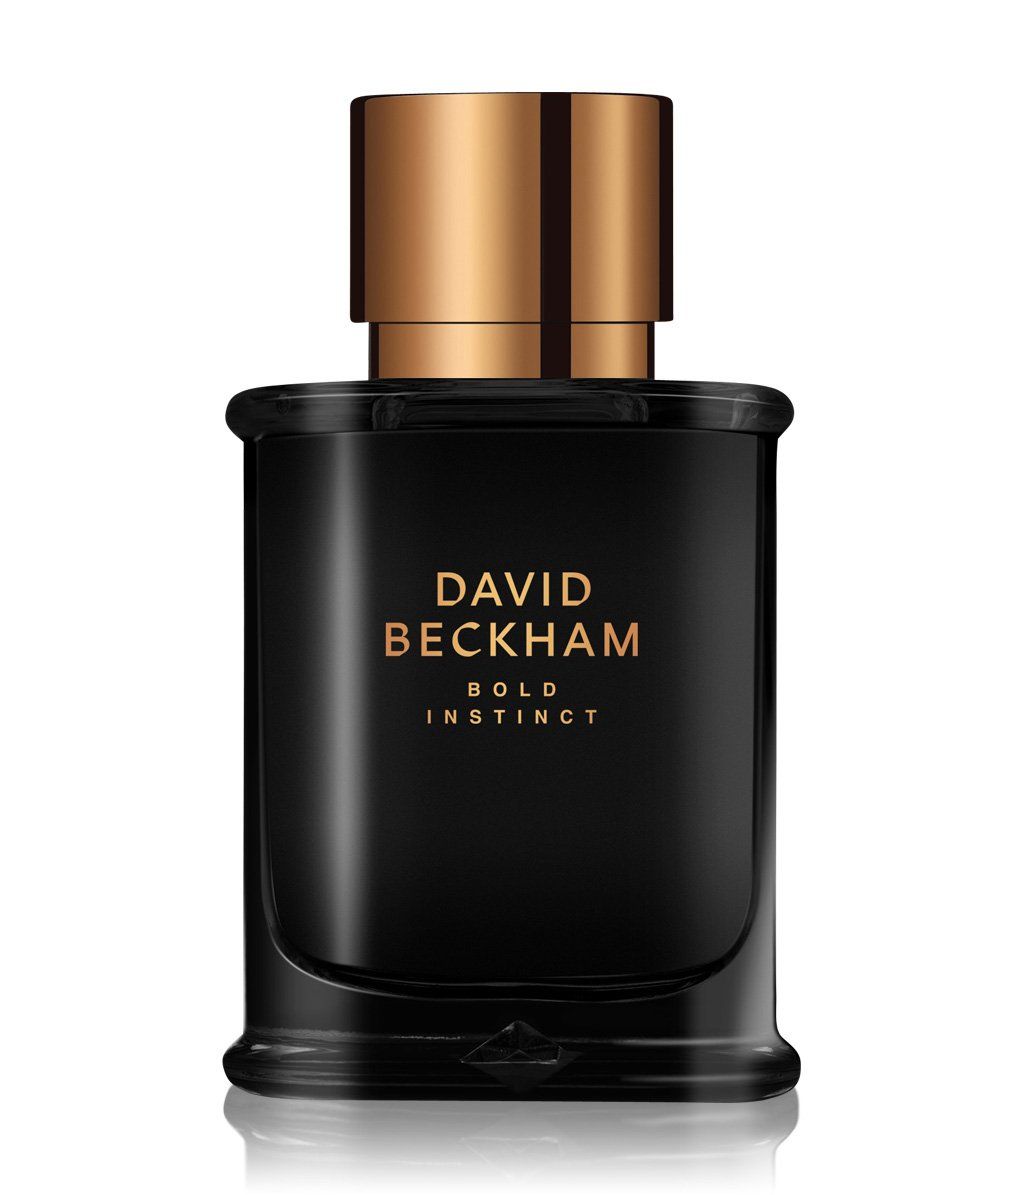 Parfum David Beckham - Homecare24